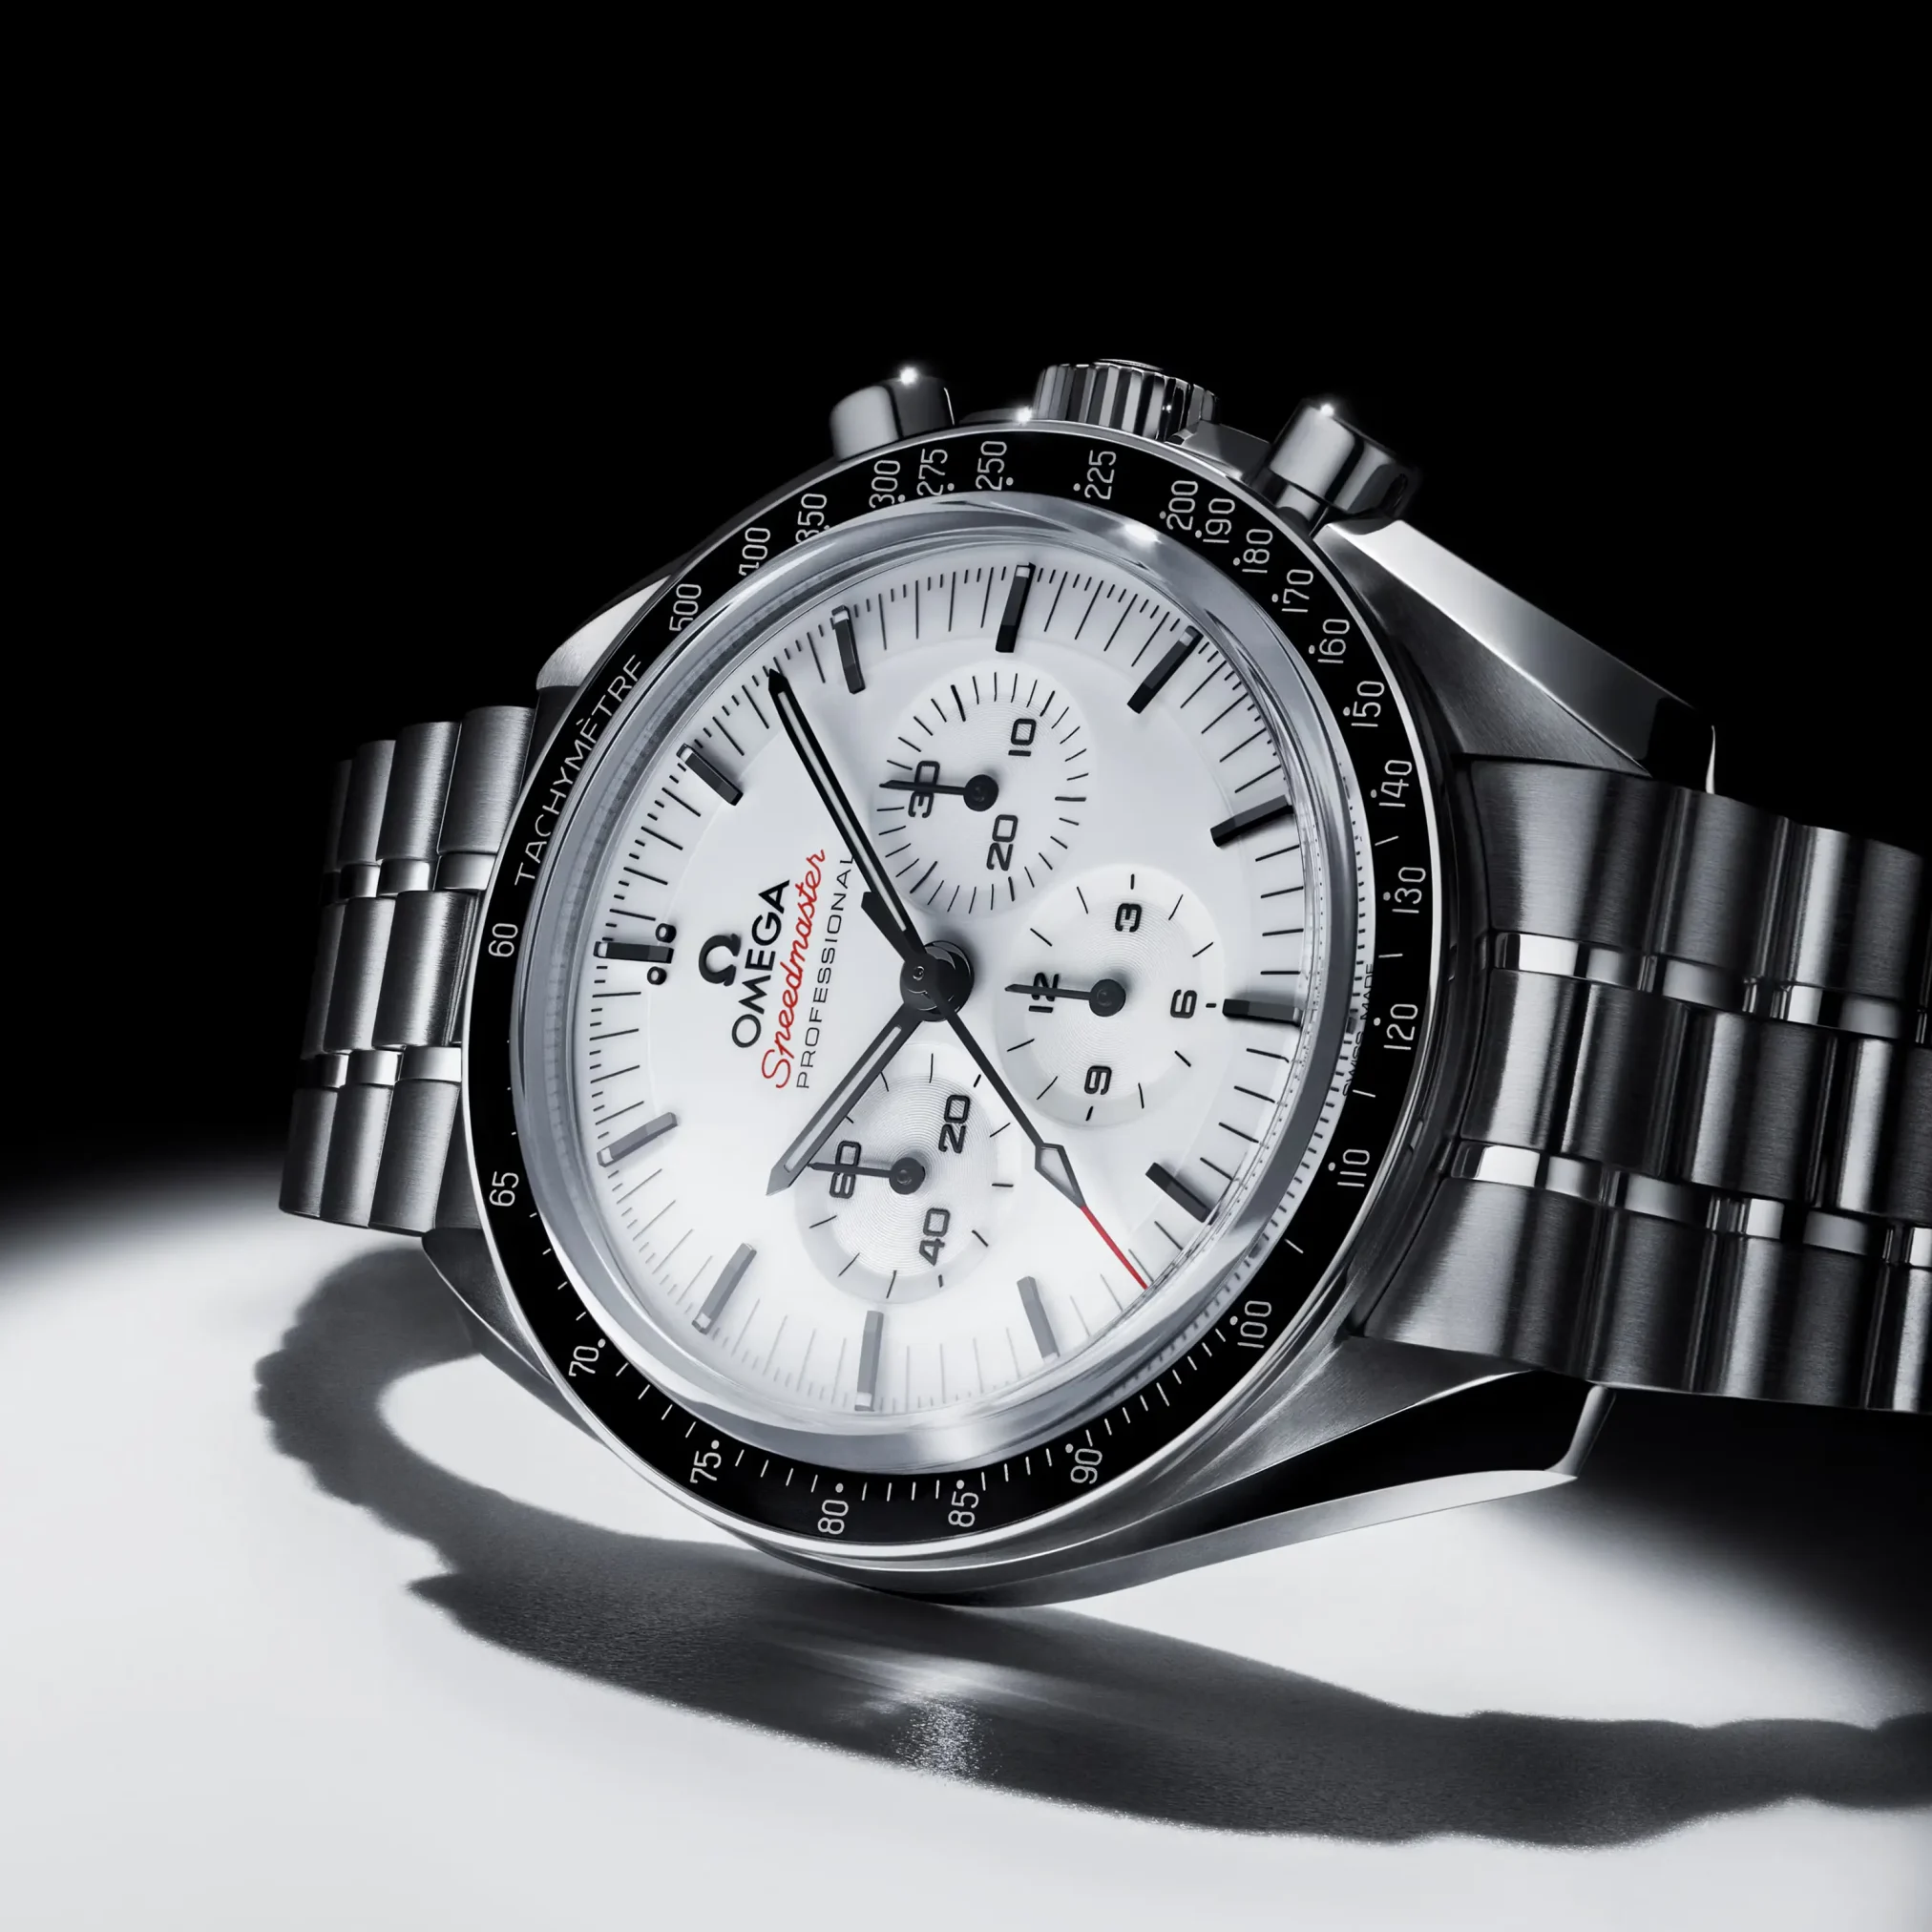 Đồng hồ Omega Speedmaster Moonwatch Professional 310.30.42.50.04.001 mặt số màu trắng. Dây đeo bằng thép. Thân vỏ bằng thép.